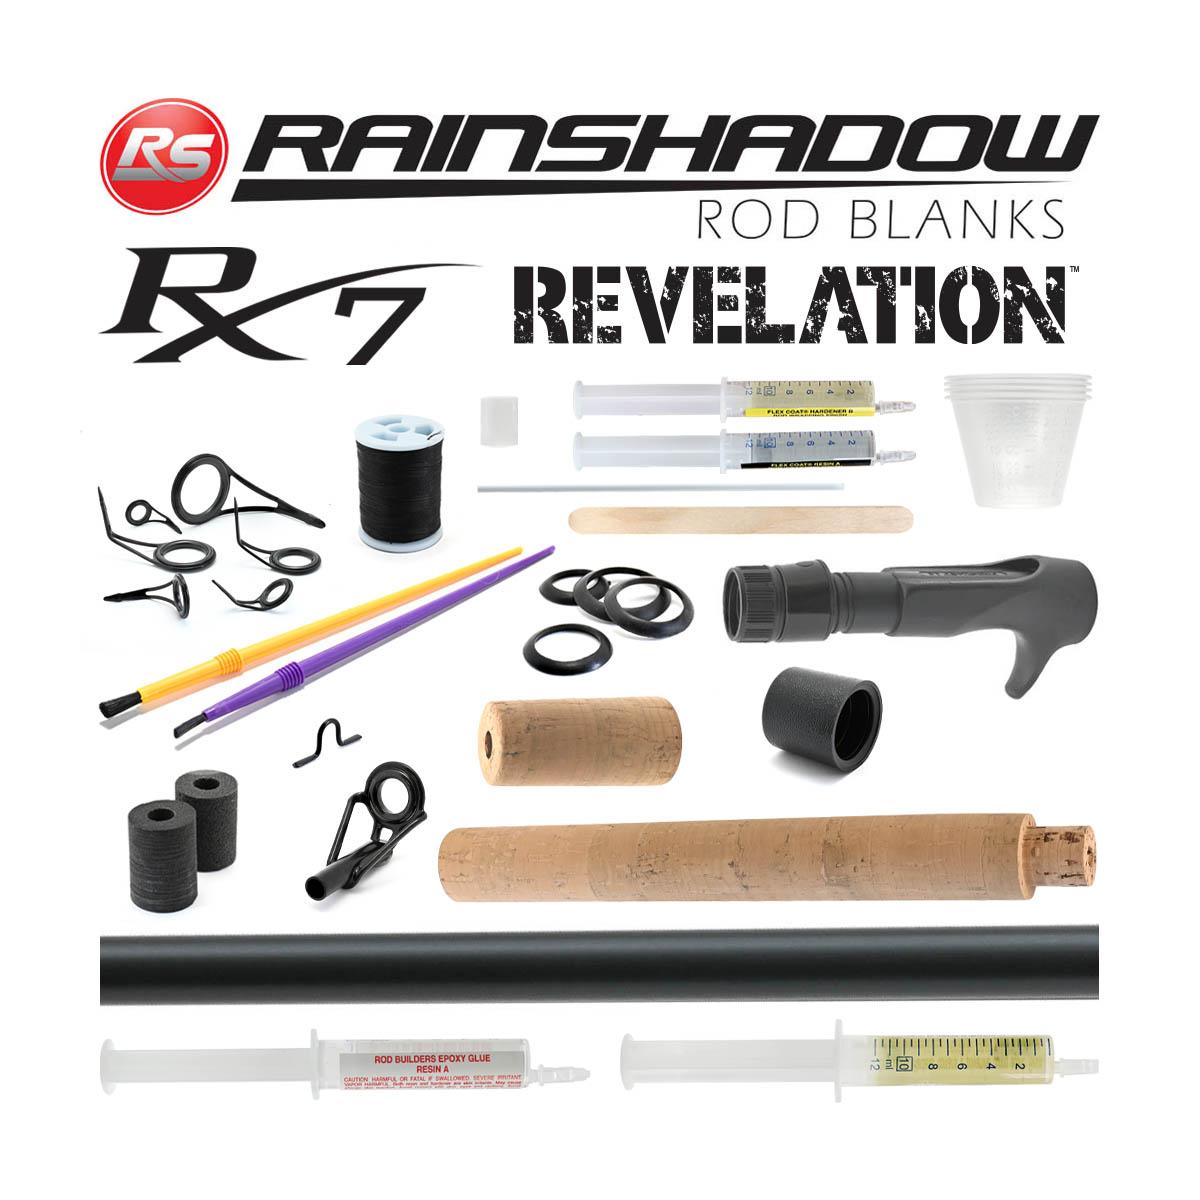 Rainshadow Revelation RX7 Casting Rod Building Kits